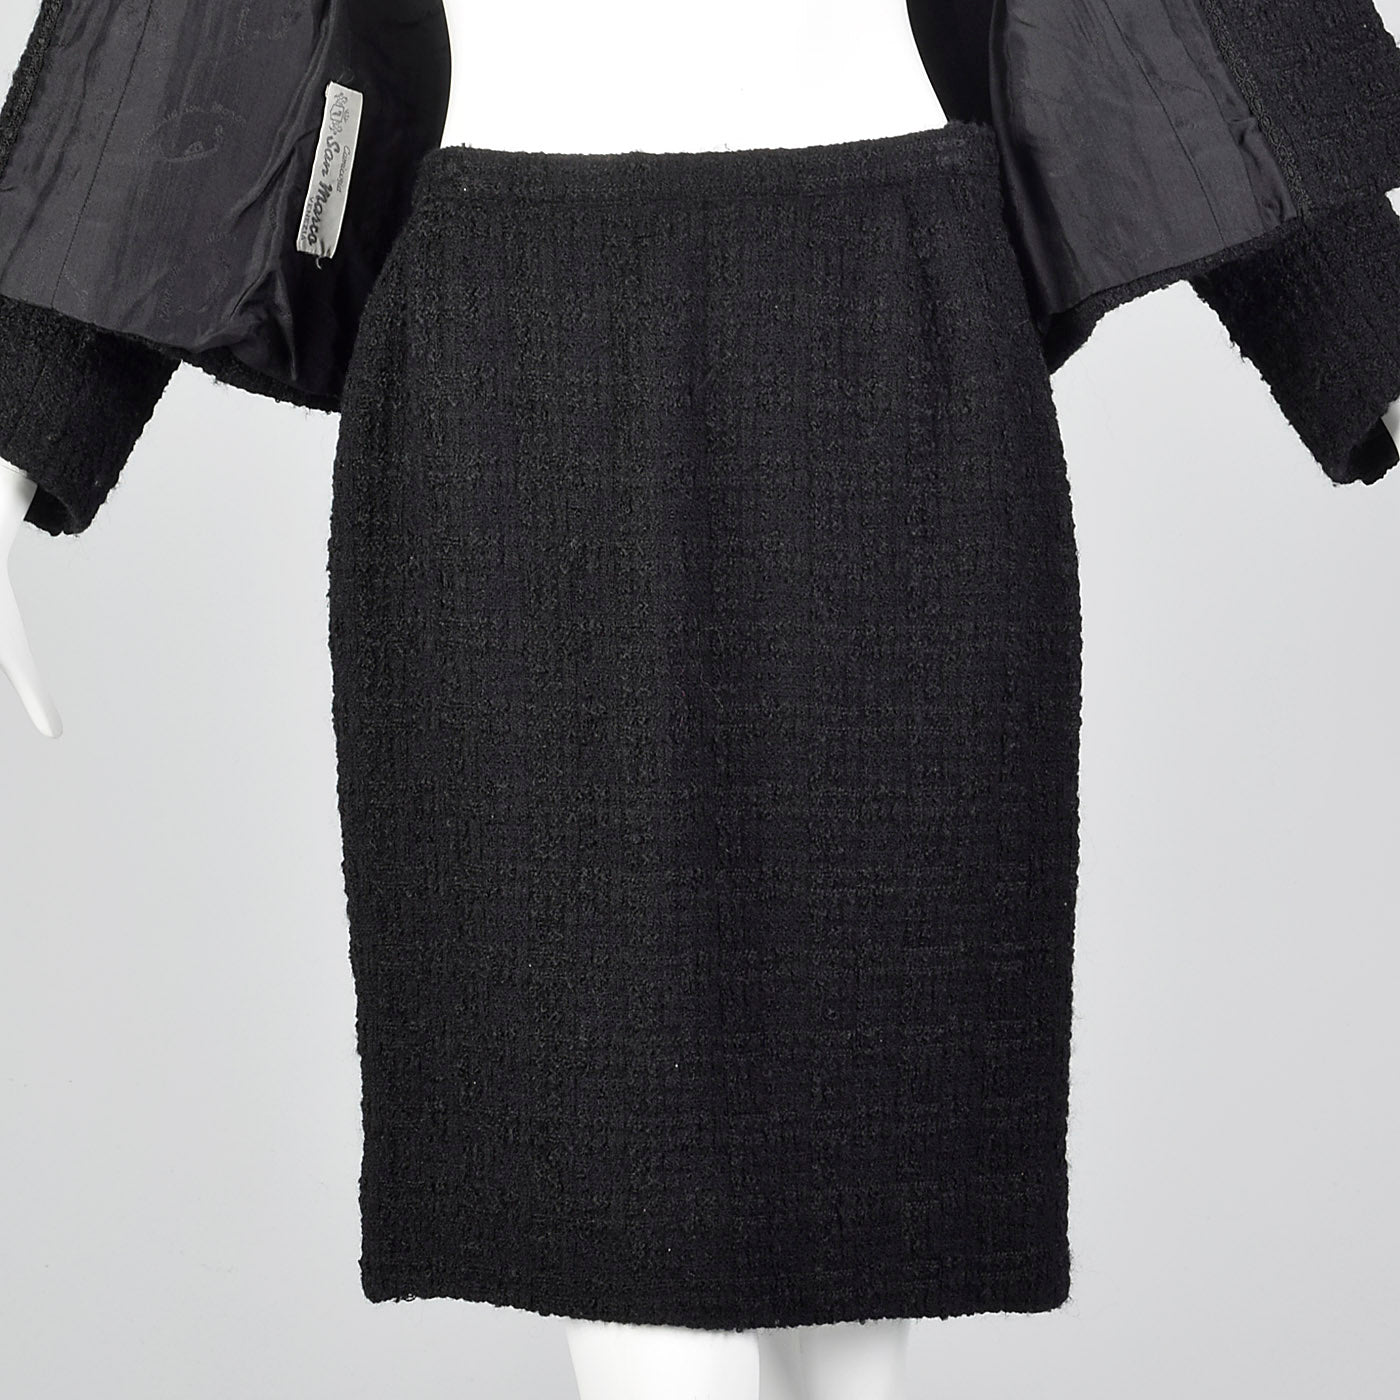 1960s Black Chunky Tweed Skirt Suit